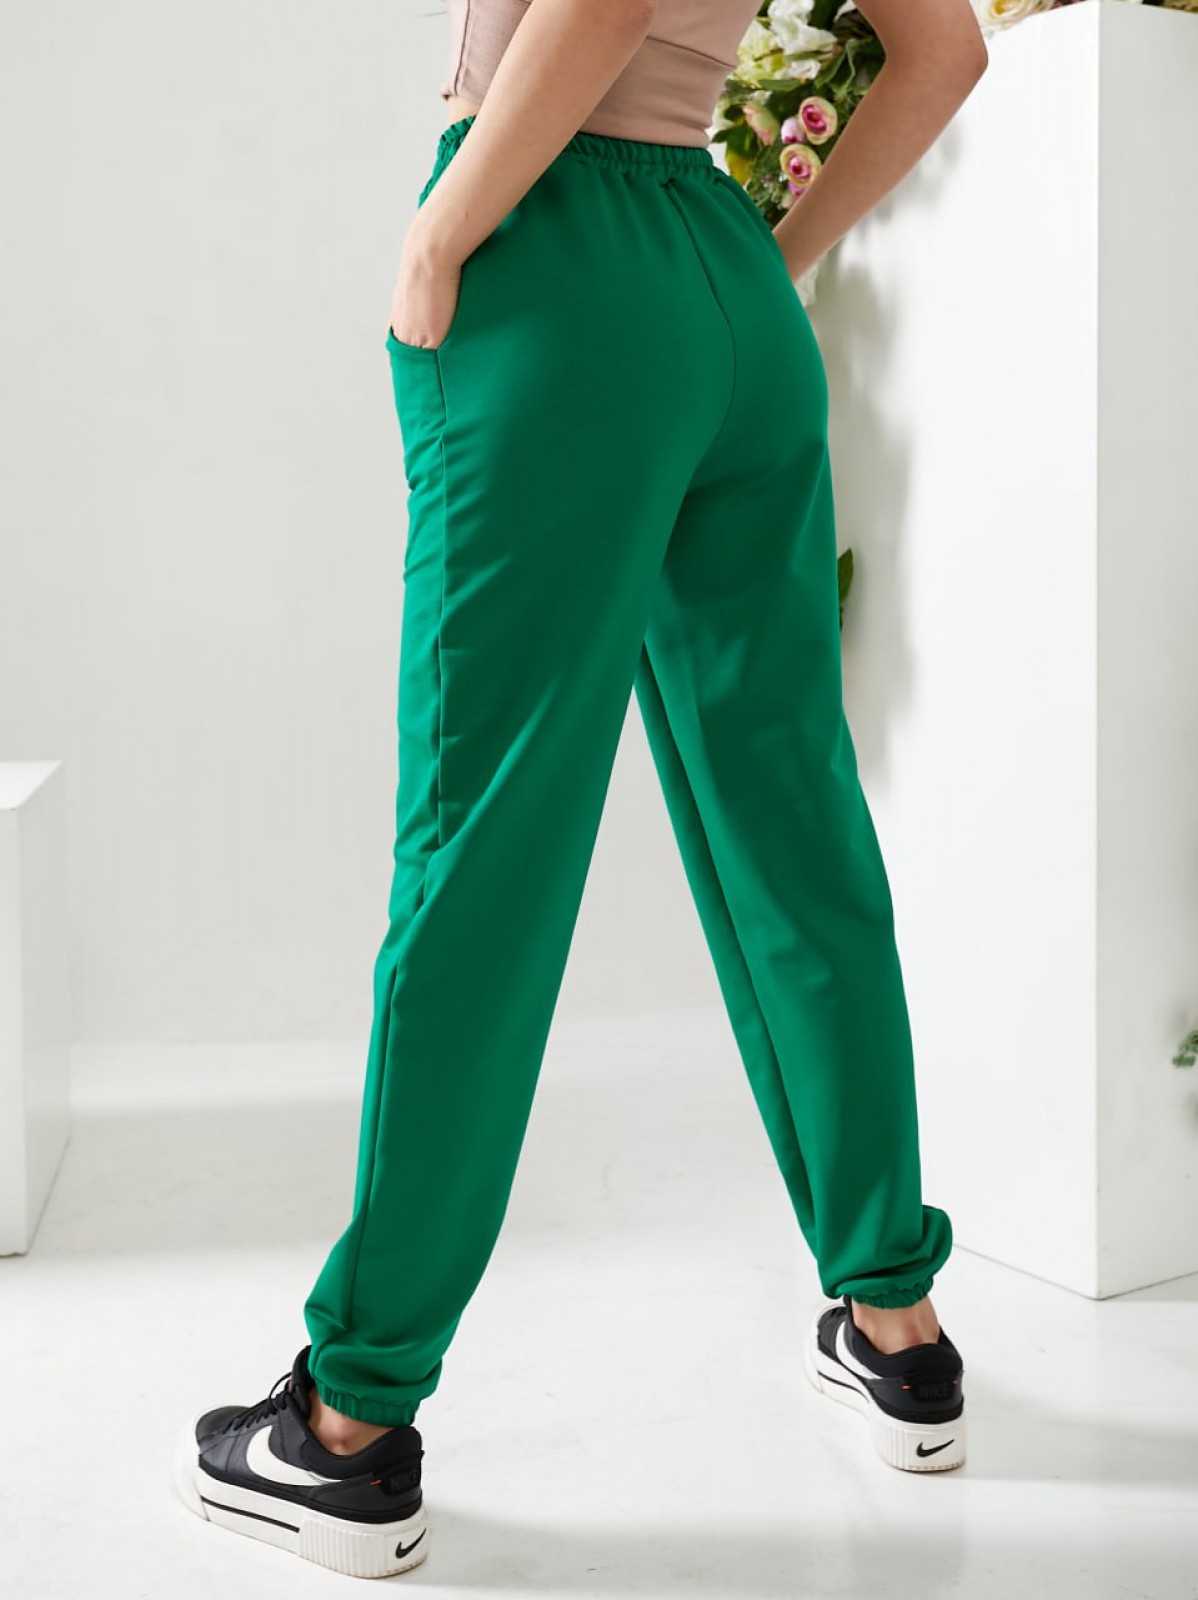 Жіночі спортивні штани двонитка зеленого кольору р.46 406178